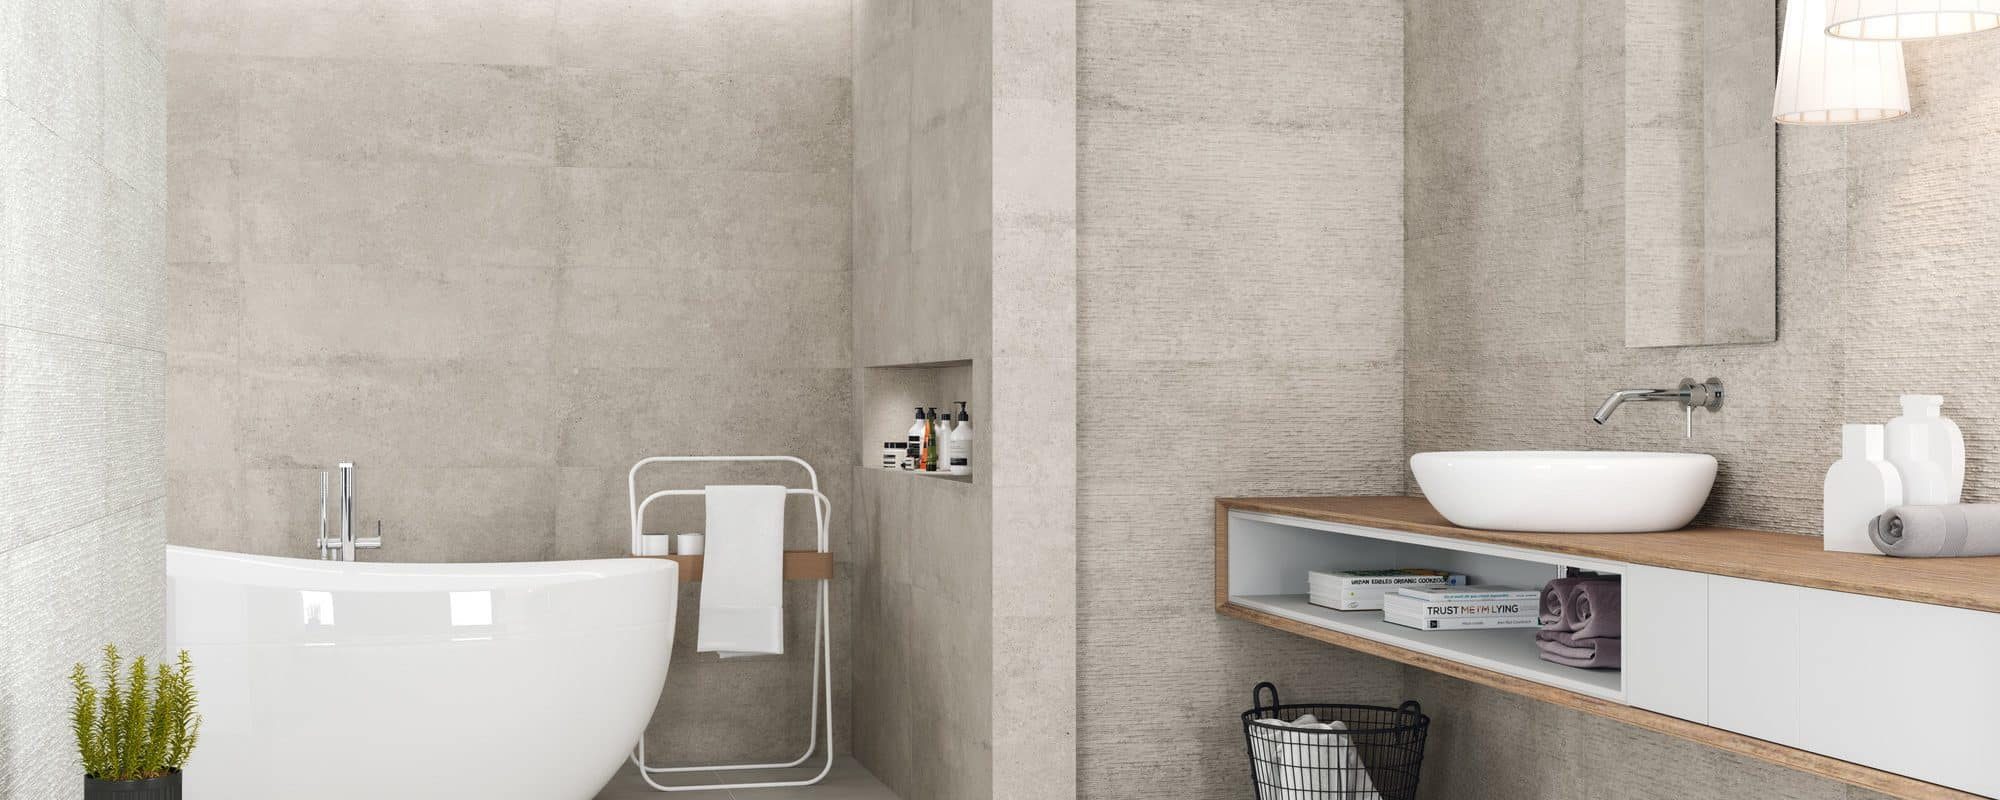 SHARON cement effect porcelain bathroom tiles uk slider 2